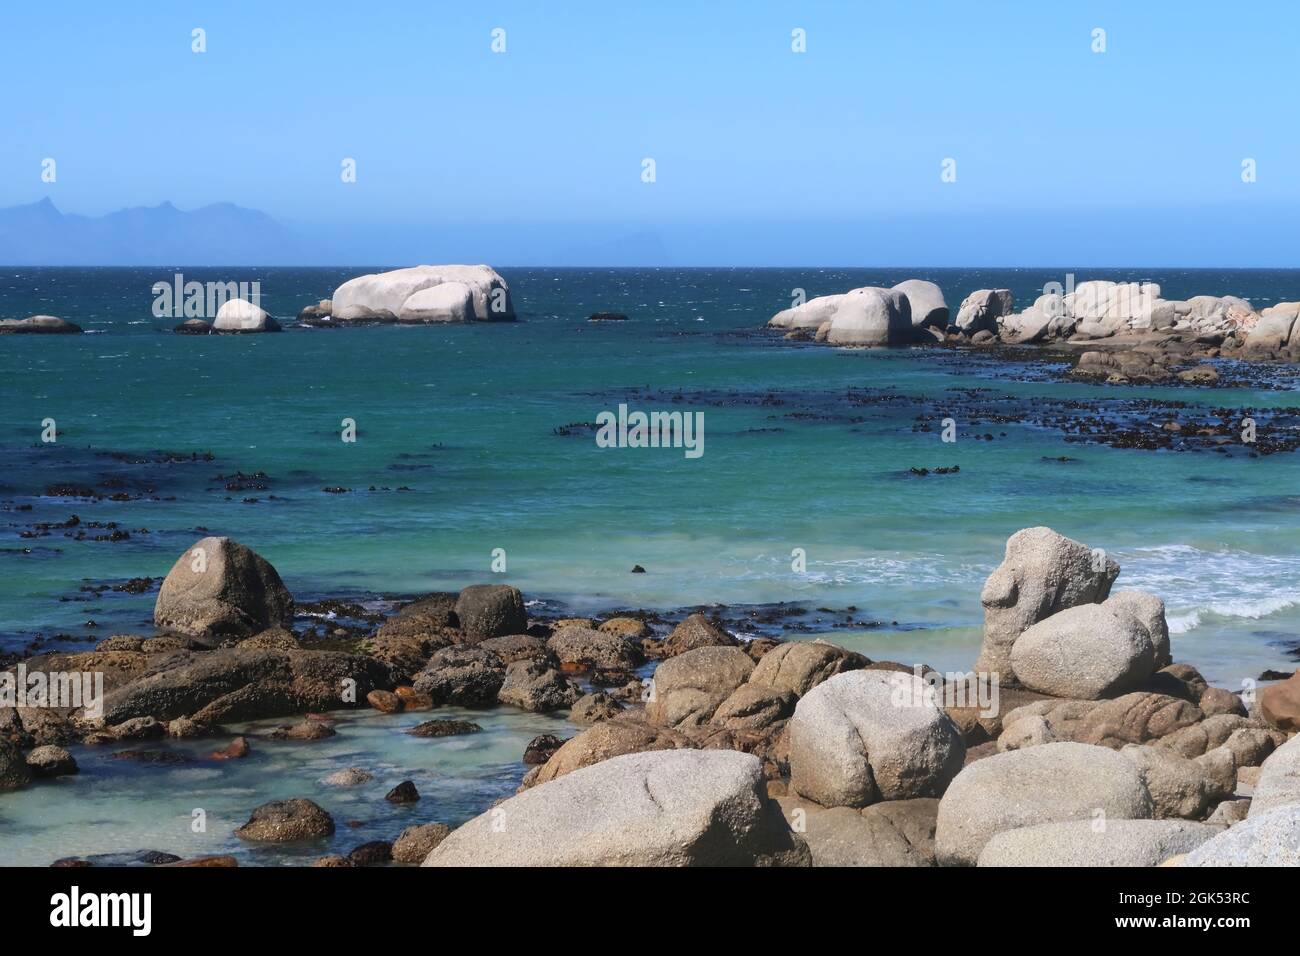 Scenografica acque turchesi dell'oceano Indiano lungo la spiaggia sabbiosa con grandi massi di granito vicino alla città di Simons, sulla Penisola del Capo, Città del Capo, Sudafrica Foto Stock